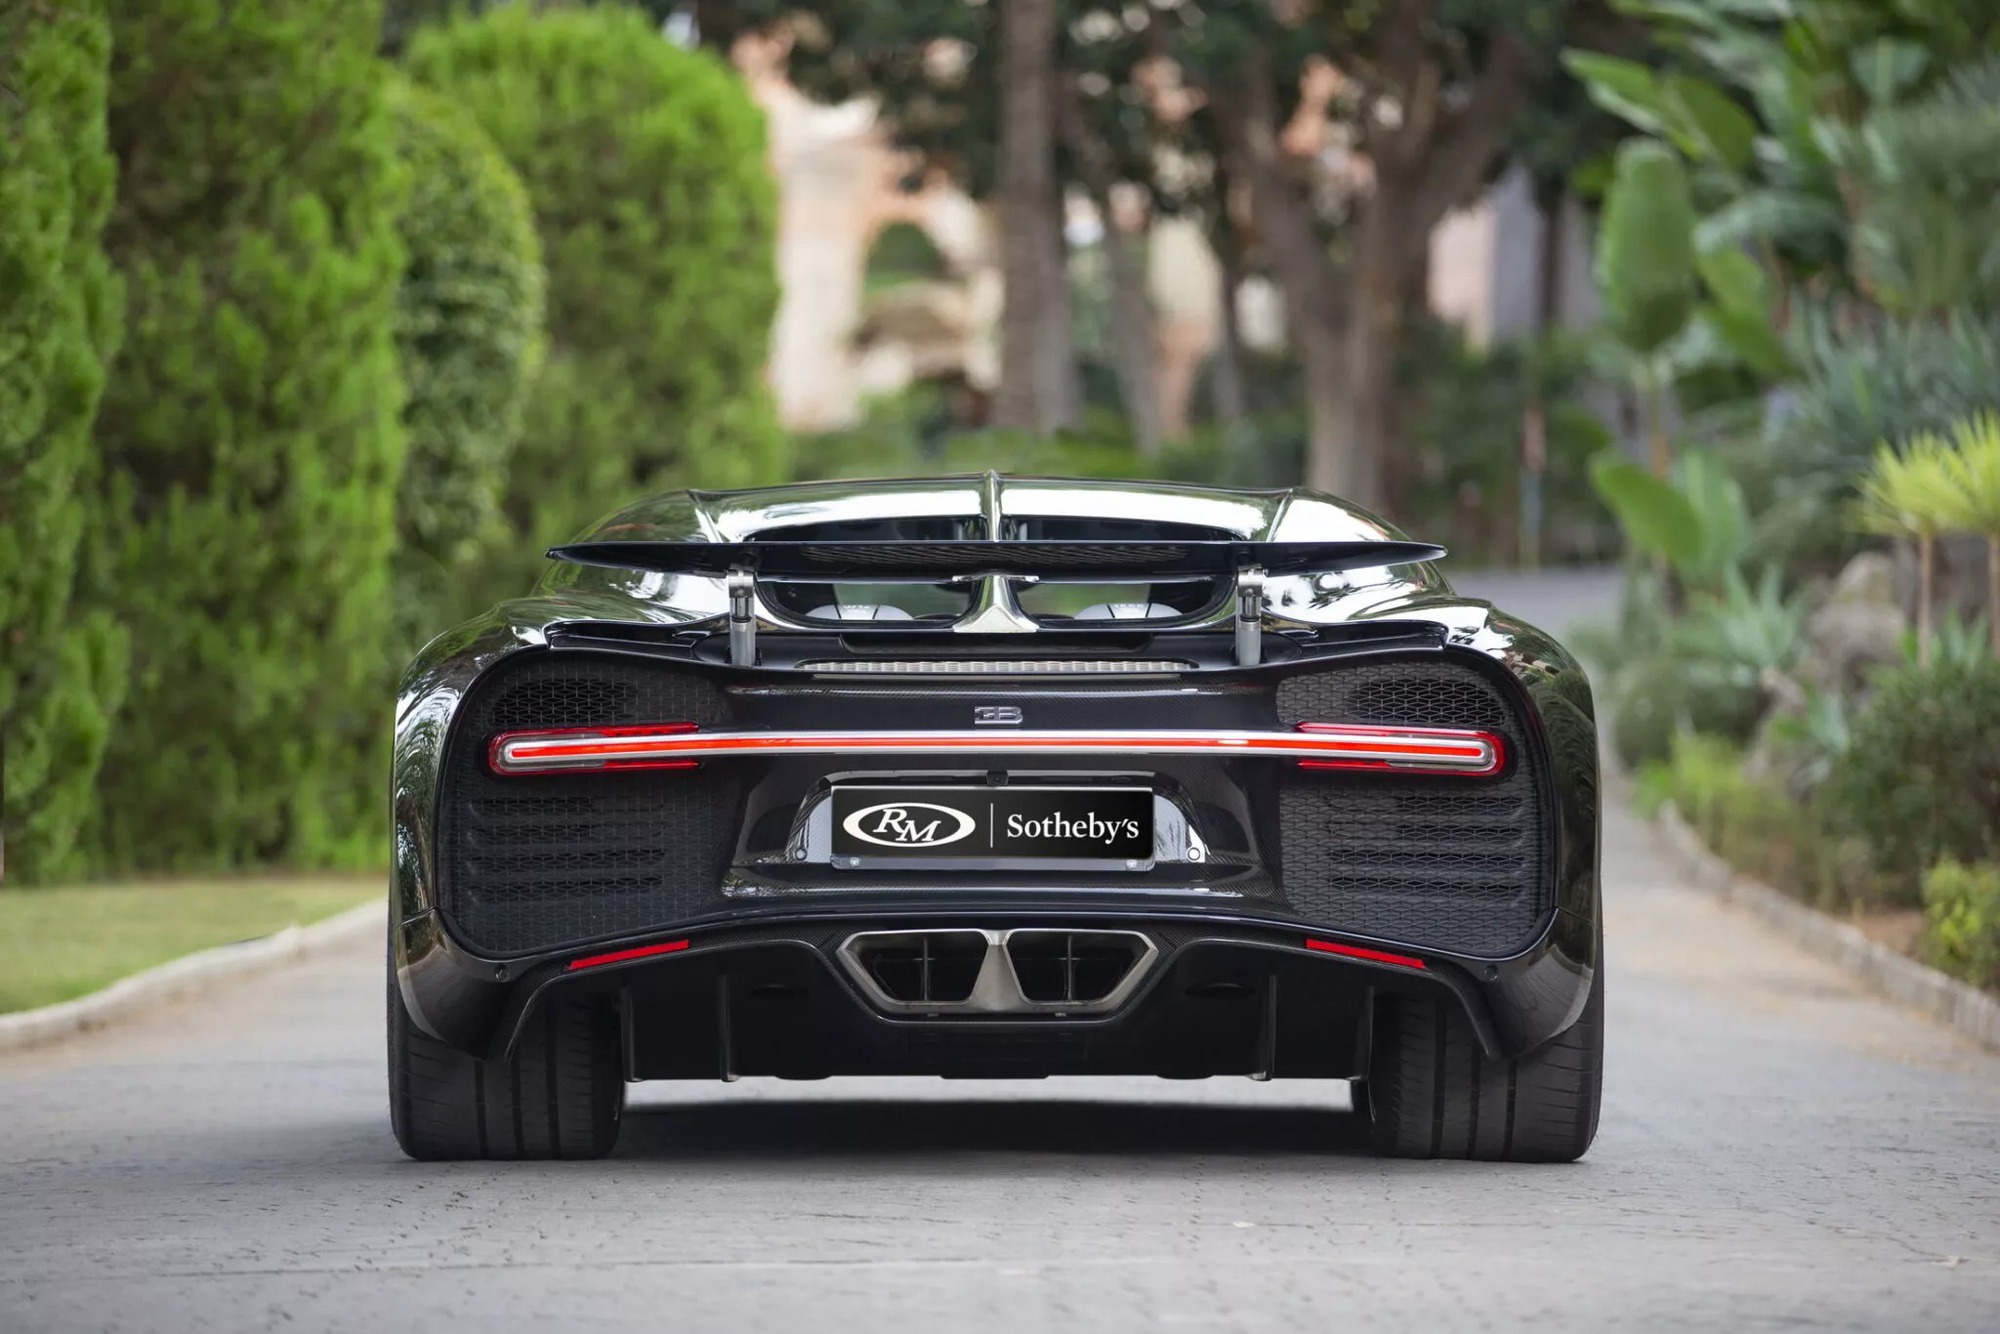 Chiếc Bugatti Chiron gần 7 năm tuổi này có giá dự kiến quy đổi gần 100 tỷ đồng: Option tiền tỷ, vỏ ngoài soi gương được - Ảnh 5.